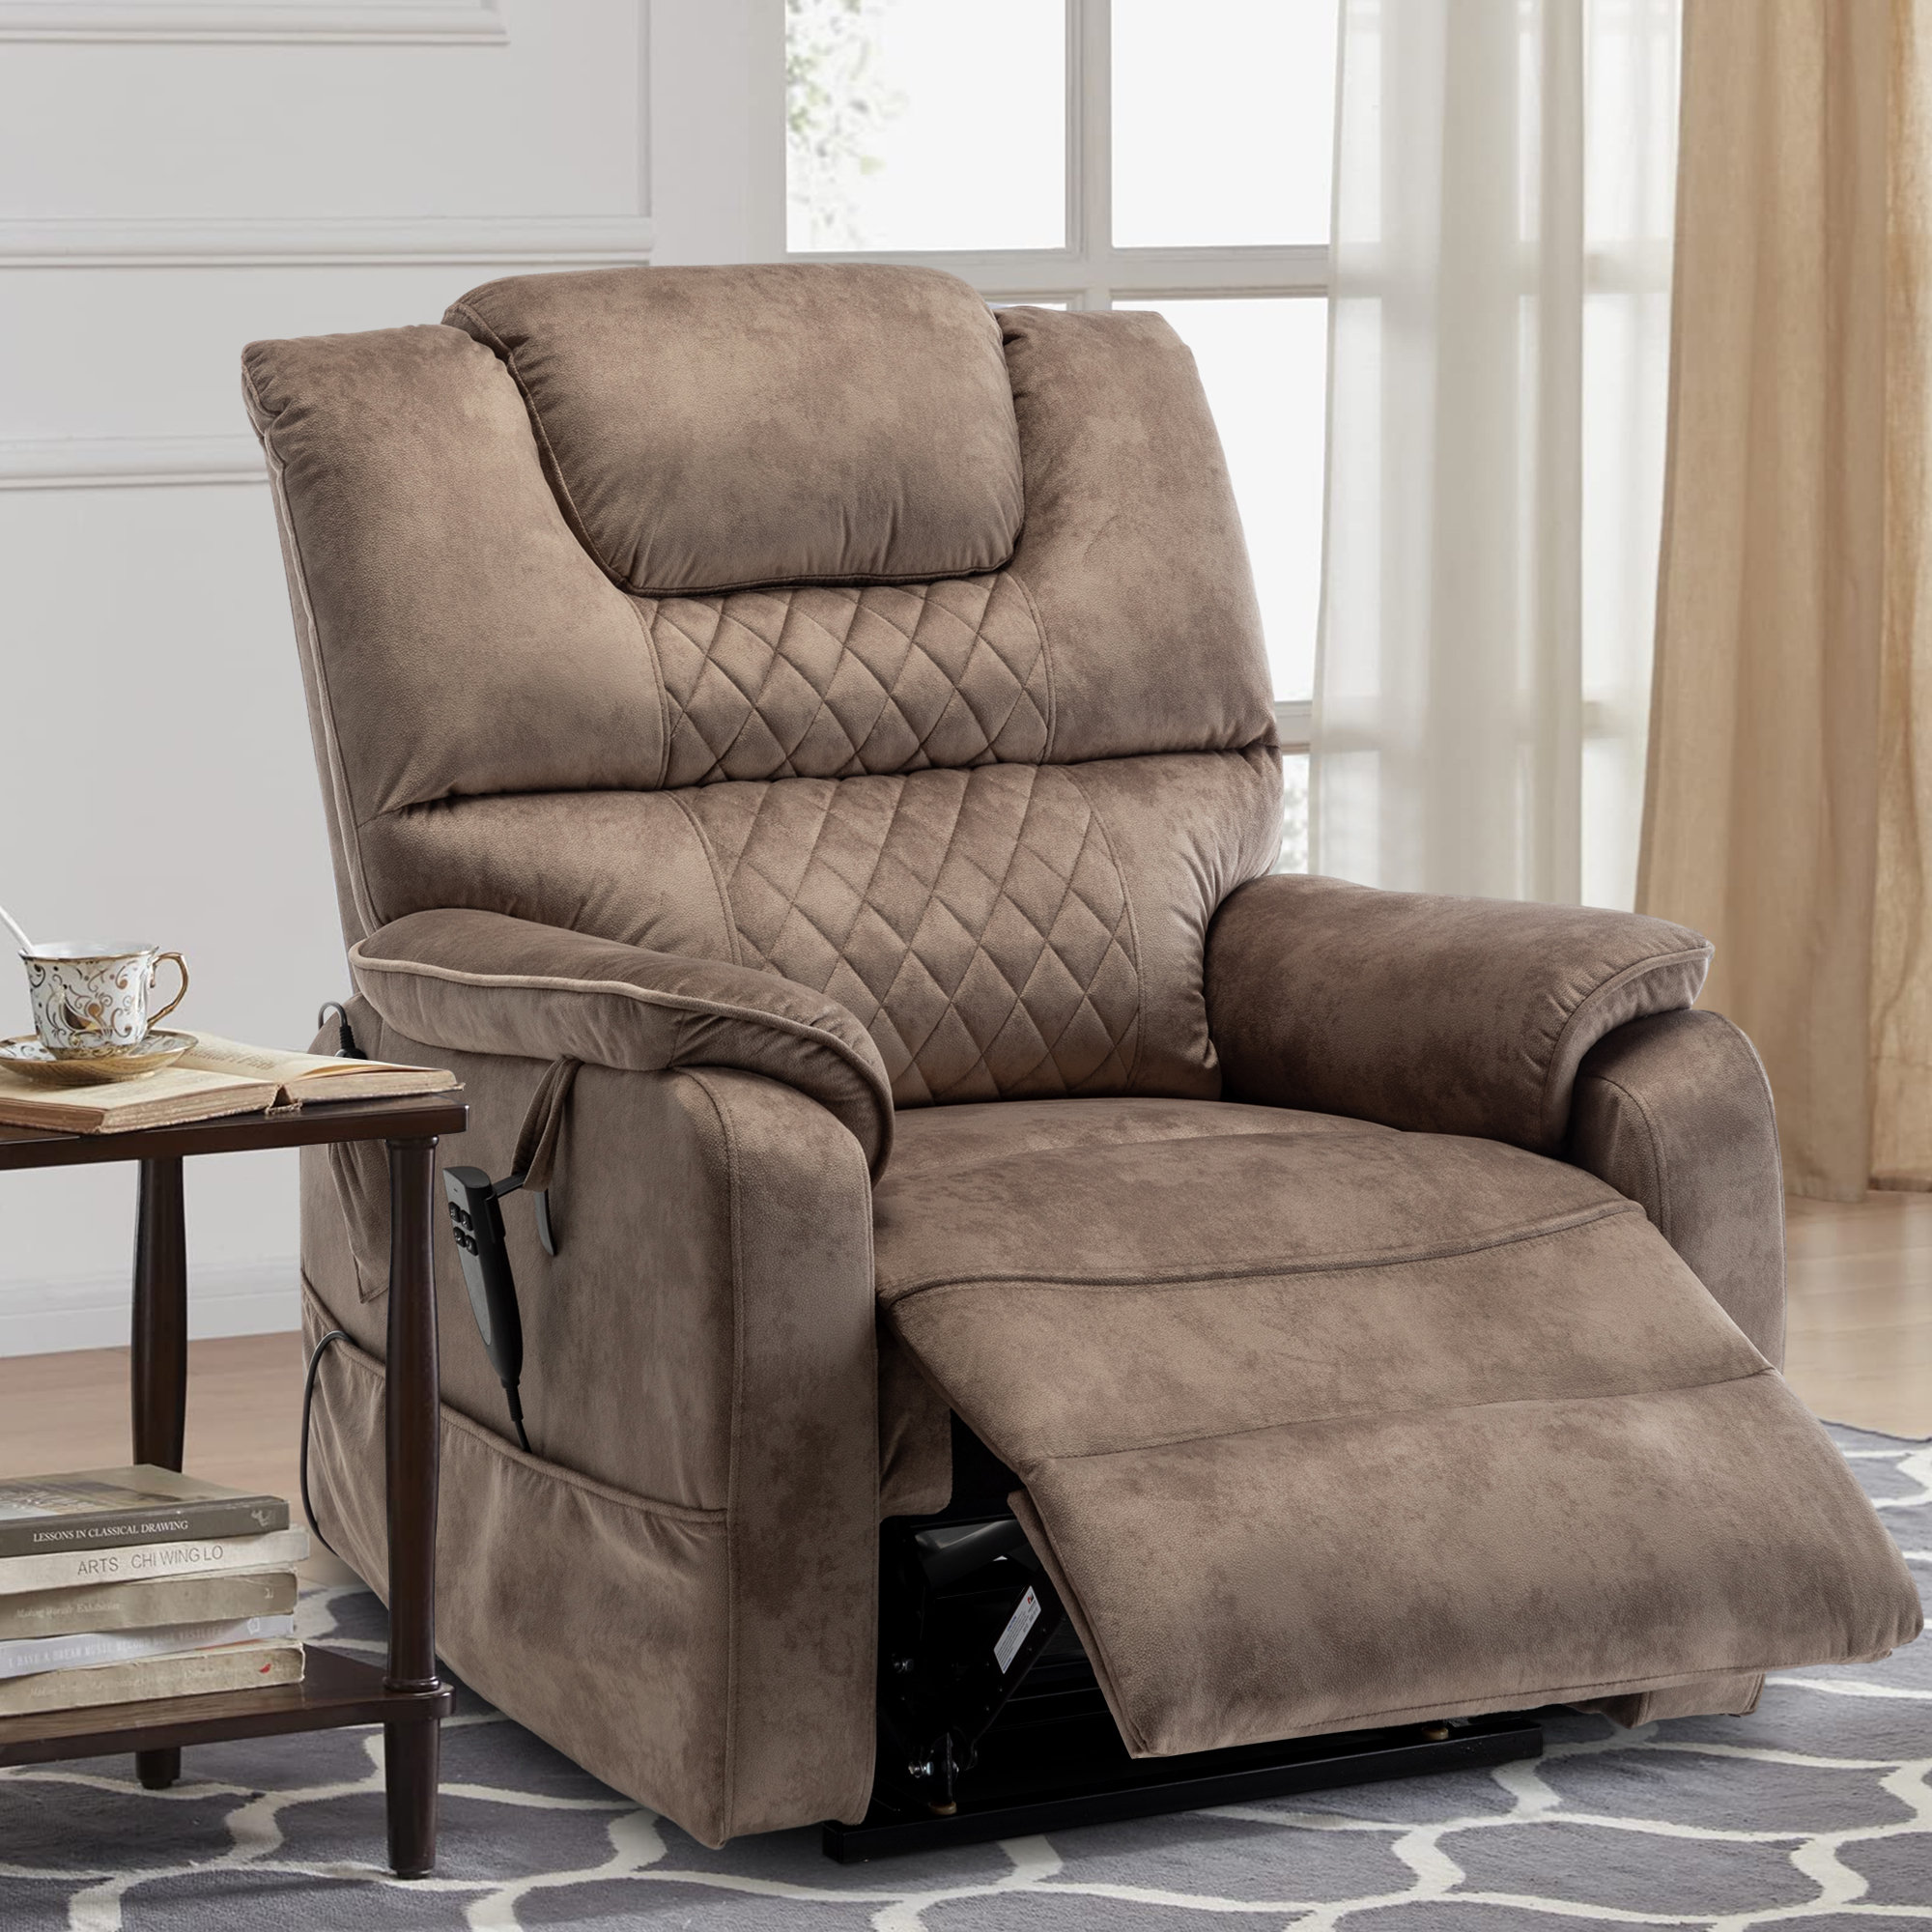 https://assets.wfcdn.com/im/01623466/compr-r85/2464/246453433/daqwan-355w-dual-electric-power-lift-recliner-chair-massage-heat-for-elderly-lie-flat-180-degrees.jpg